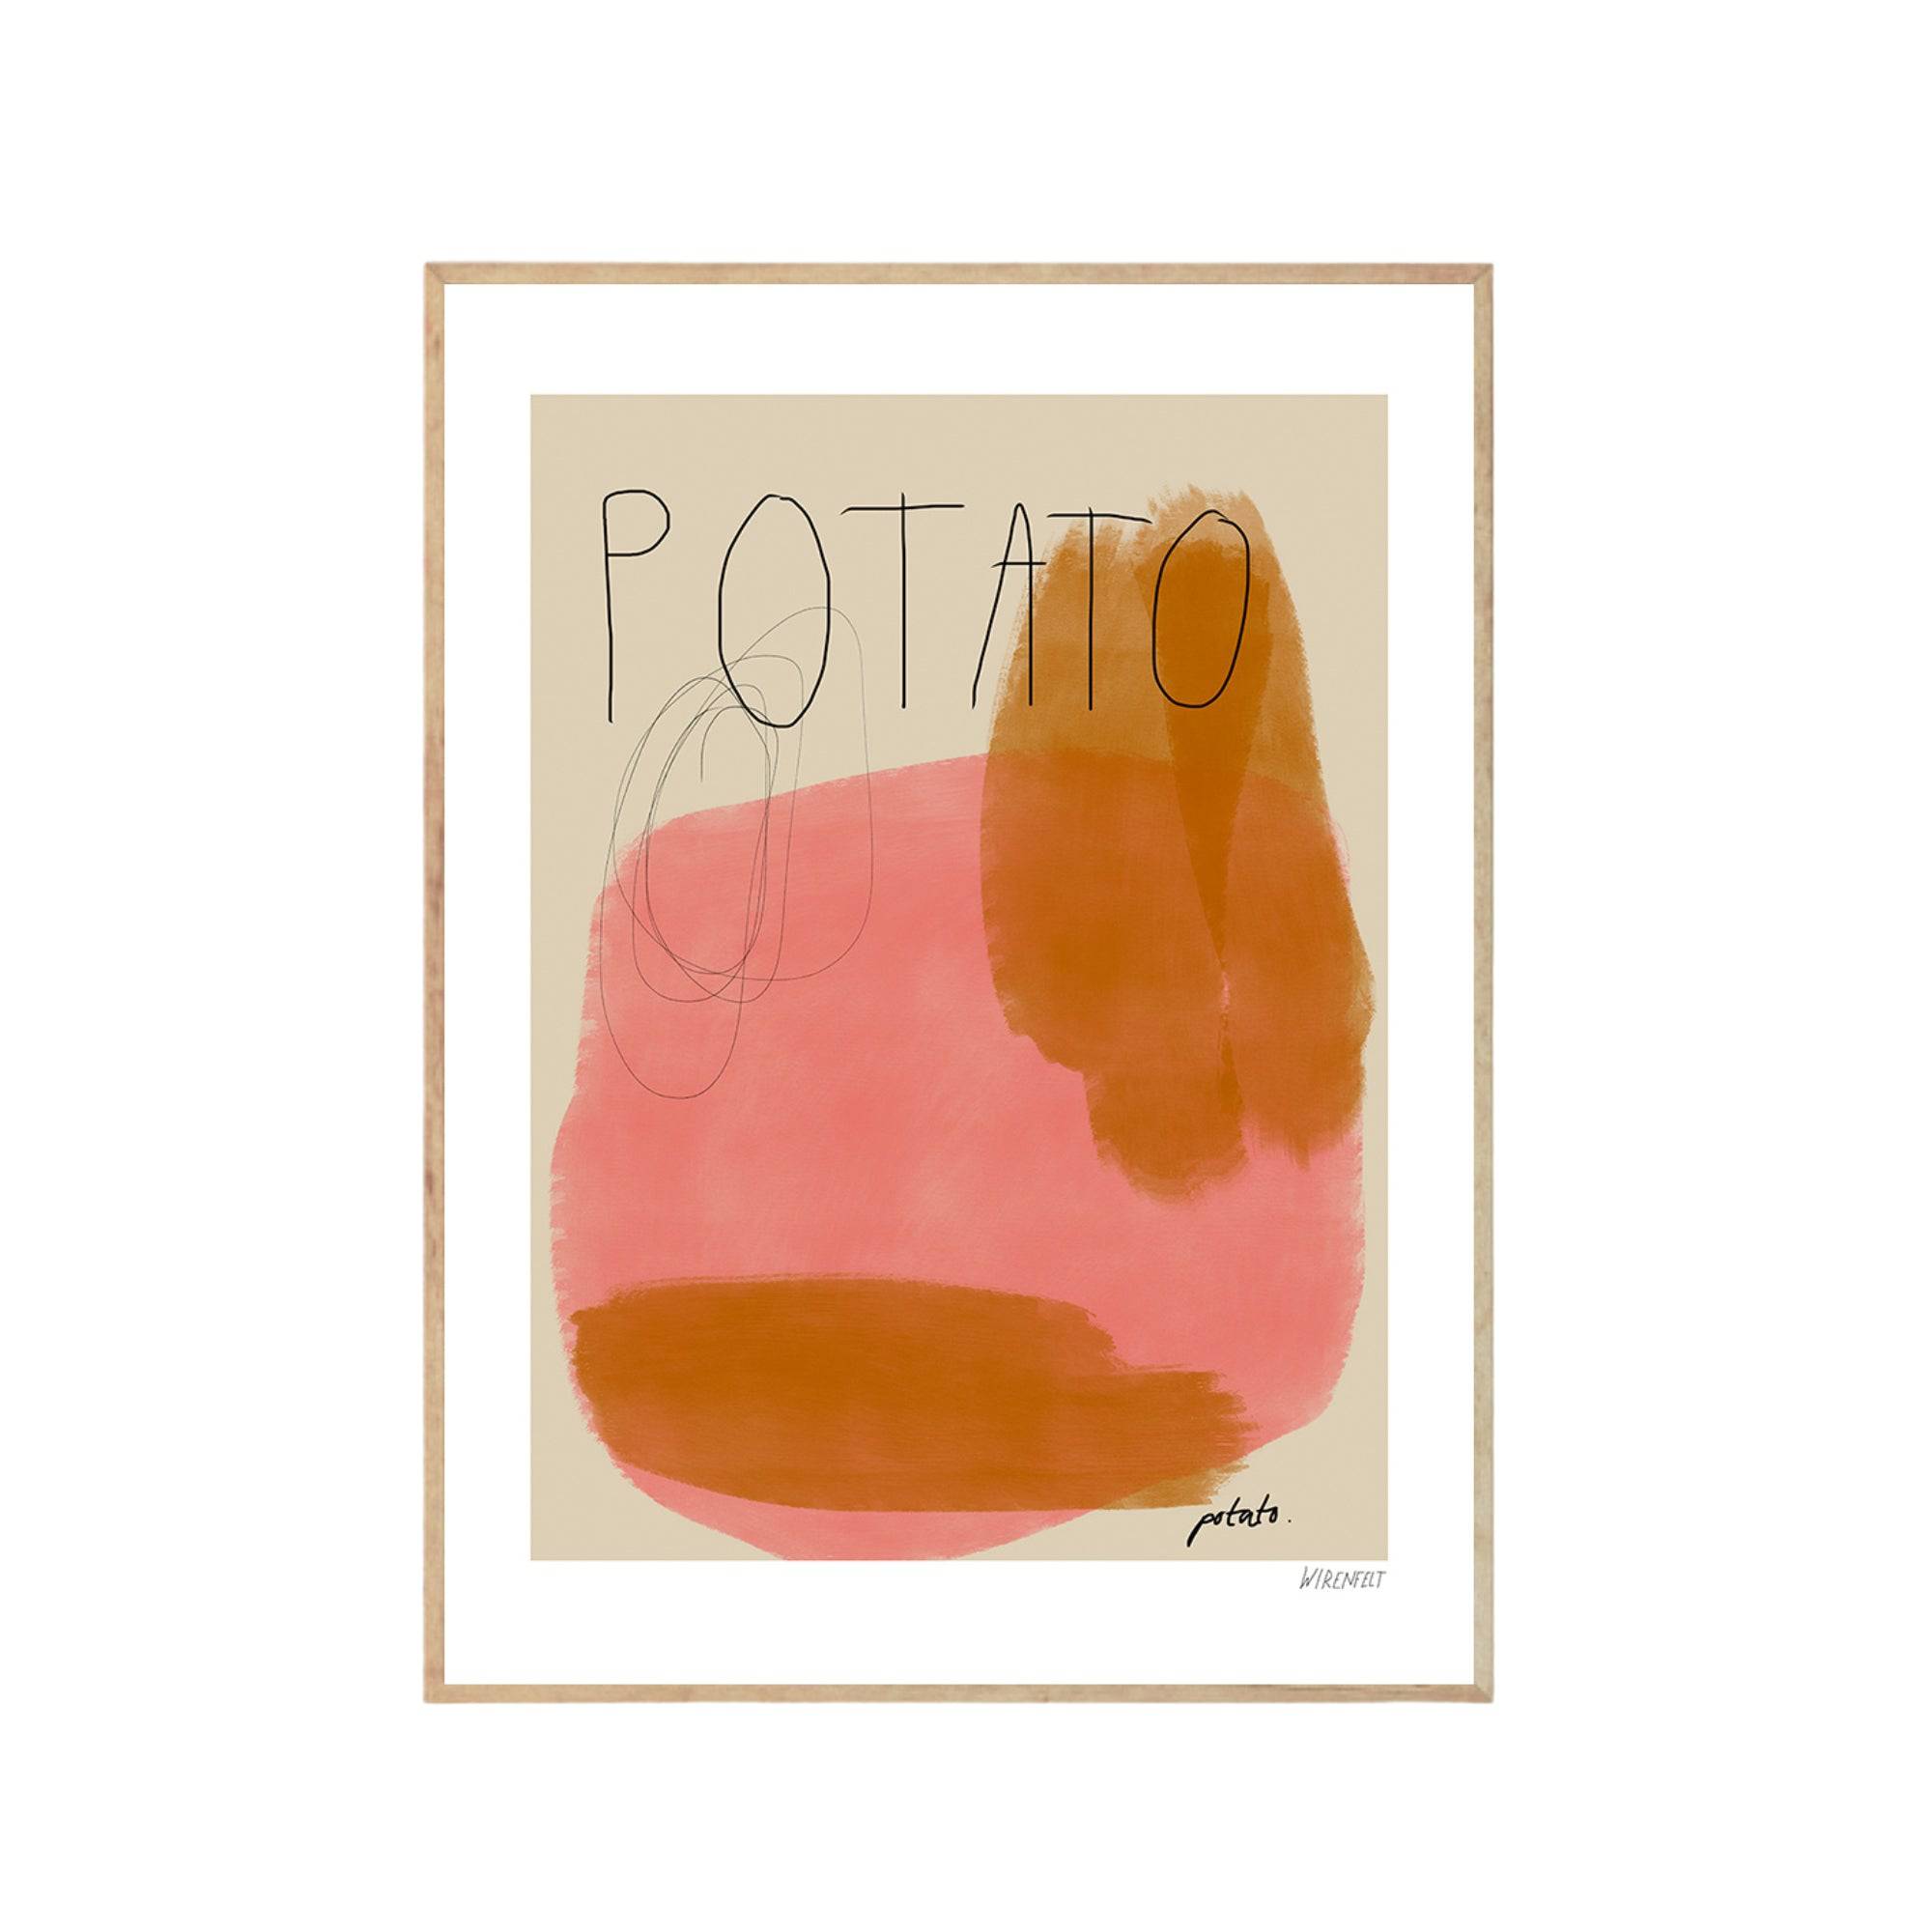 Potato Potato - THAT COOL LIVING